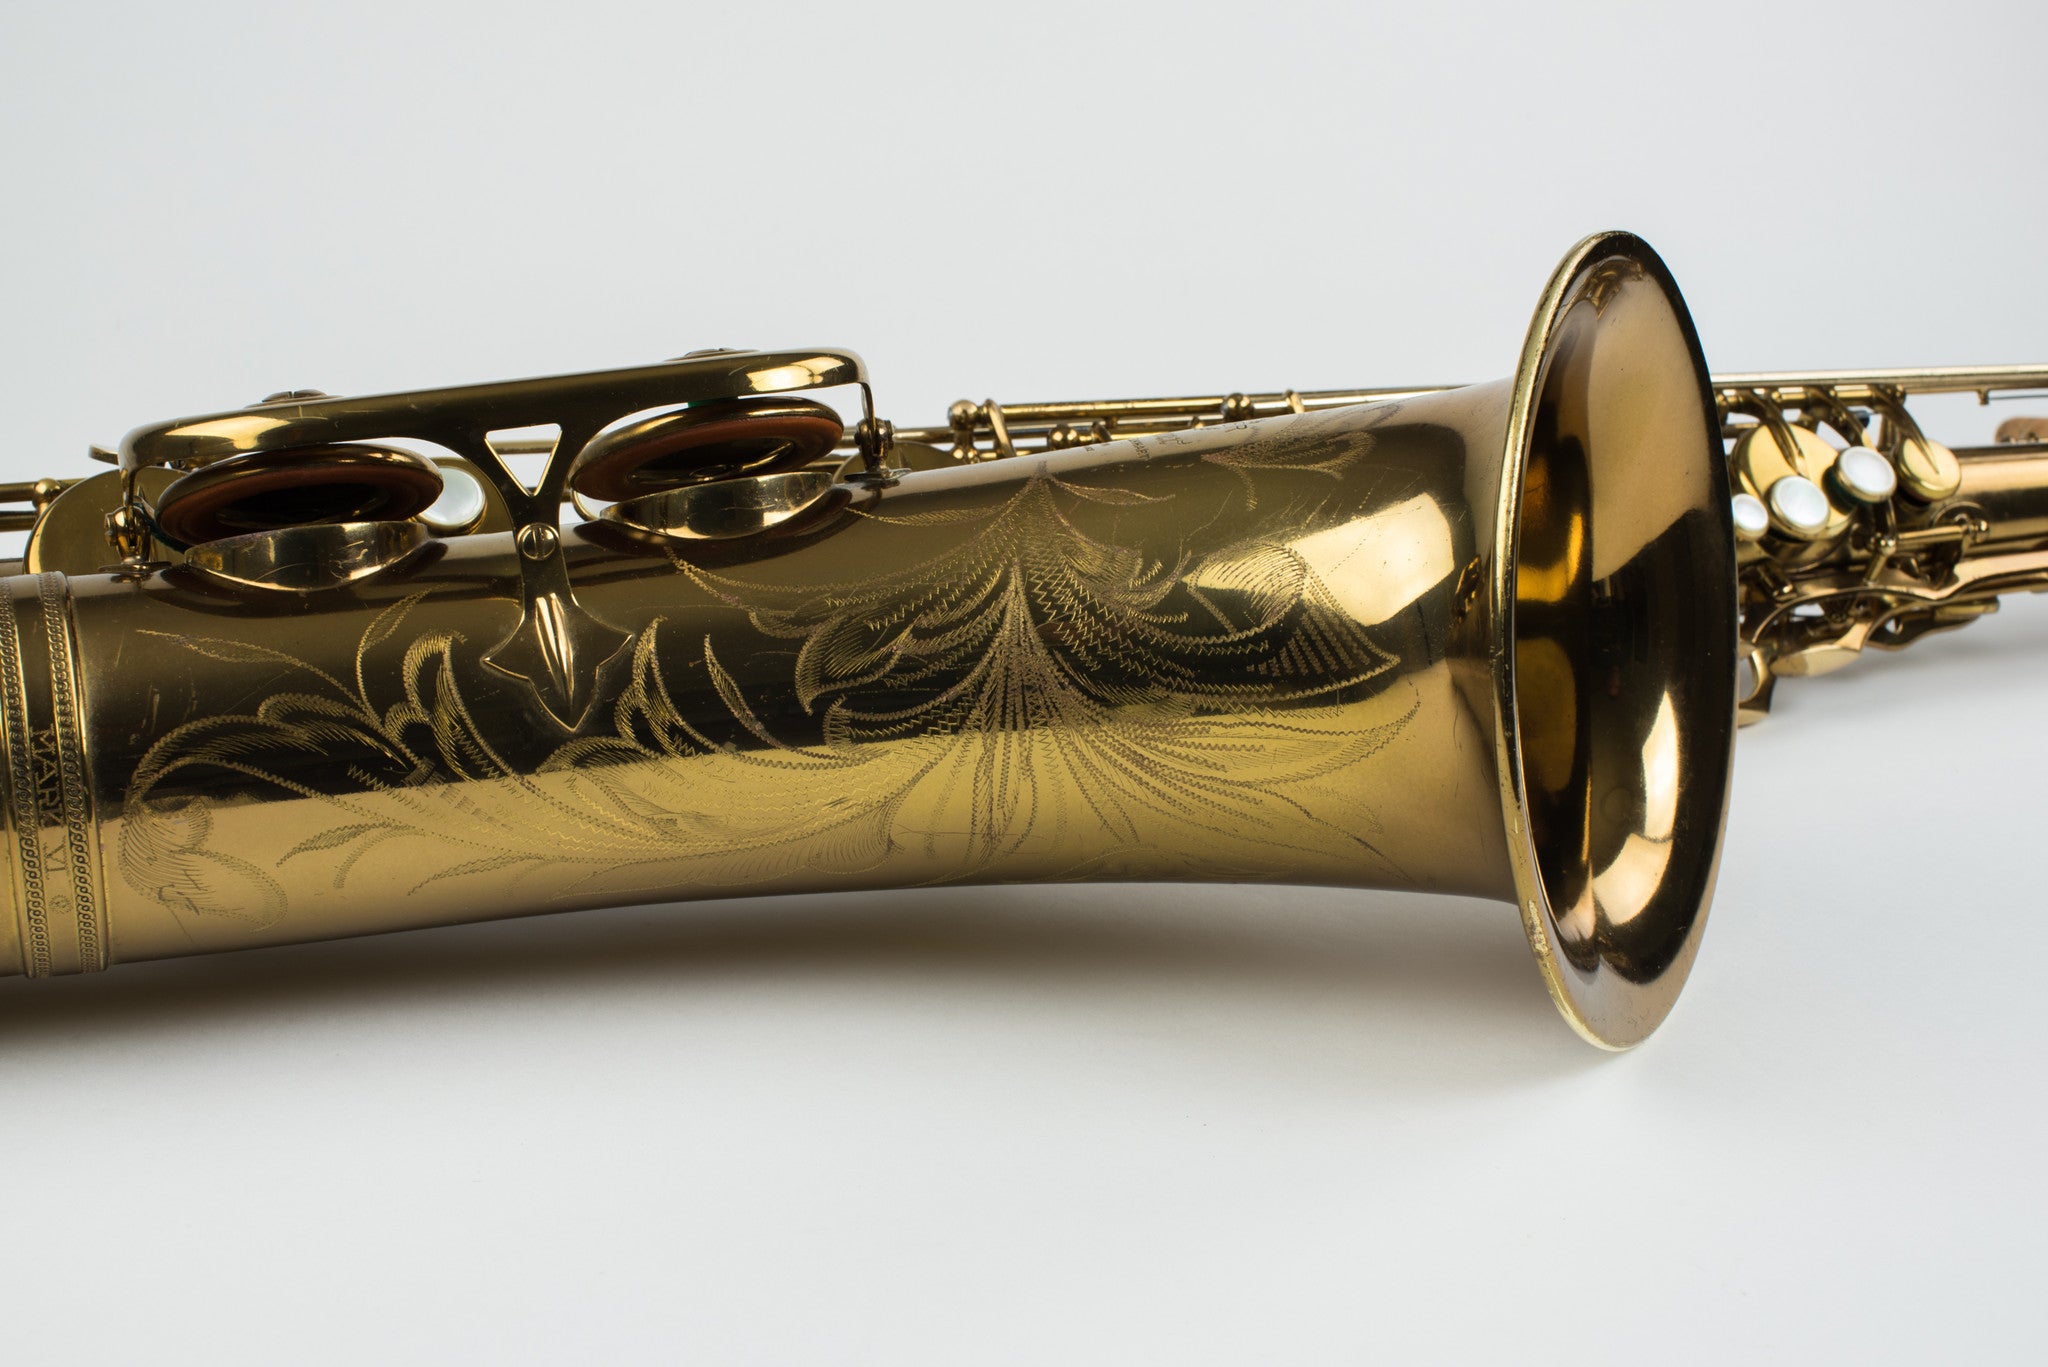 Selmer Mark VI Tenor Saxophone 116,xxx, 98% ORIGINAL LACQUER